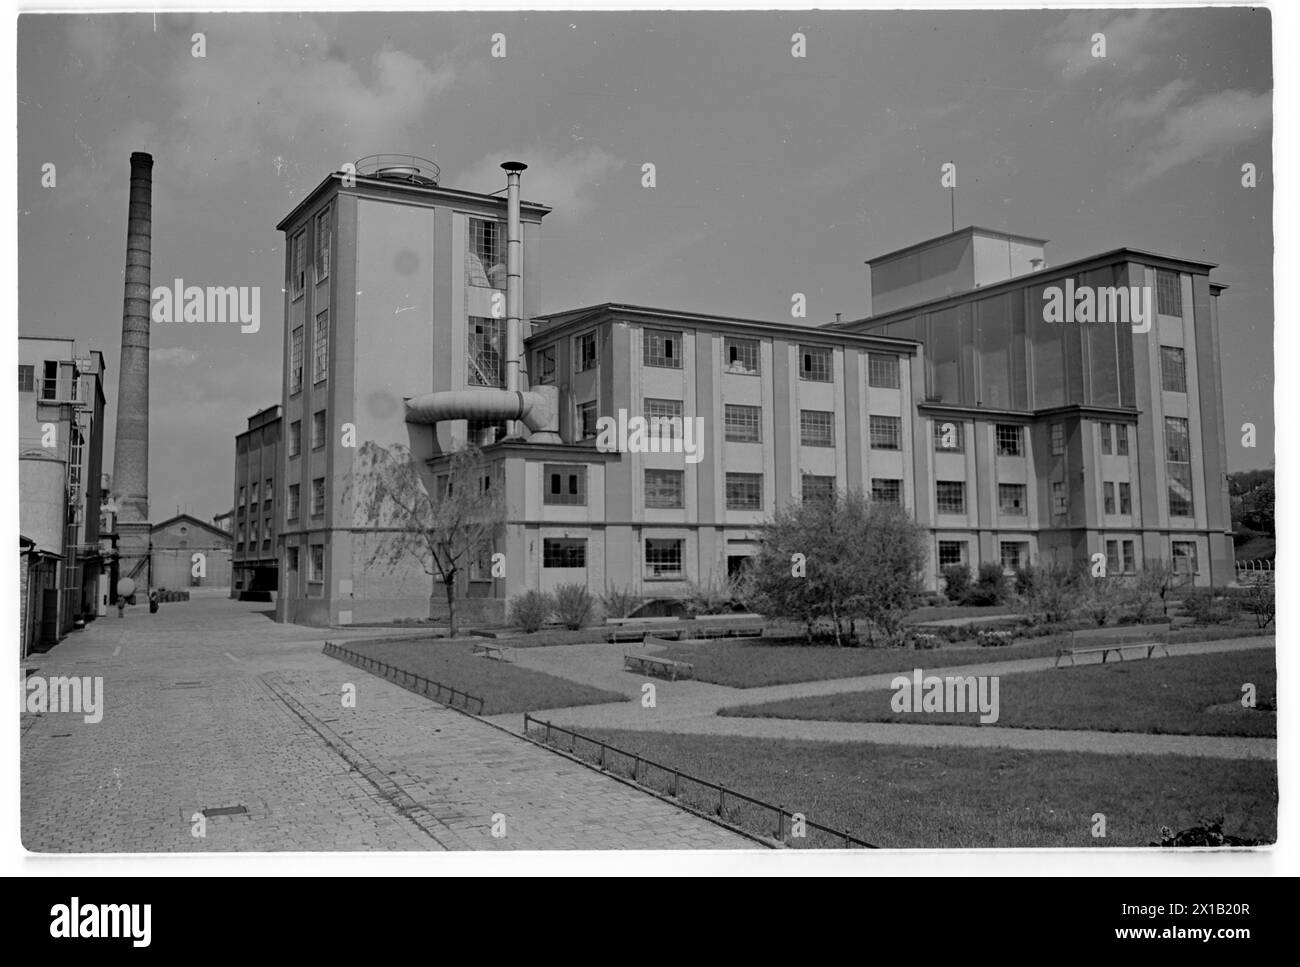 Unilever, usine de vue extérieure Simmering, 01.05.1958 - 19580501_PD0180 - Rechteinfo : droits gérés (RM) Banque D'Images